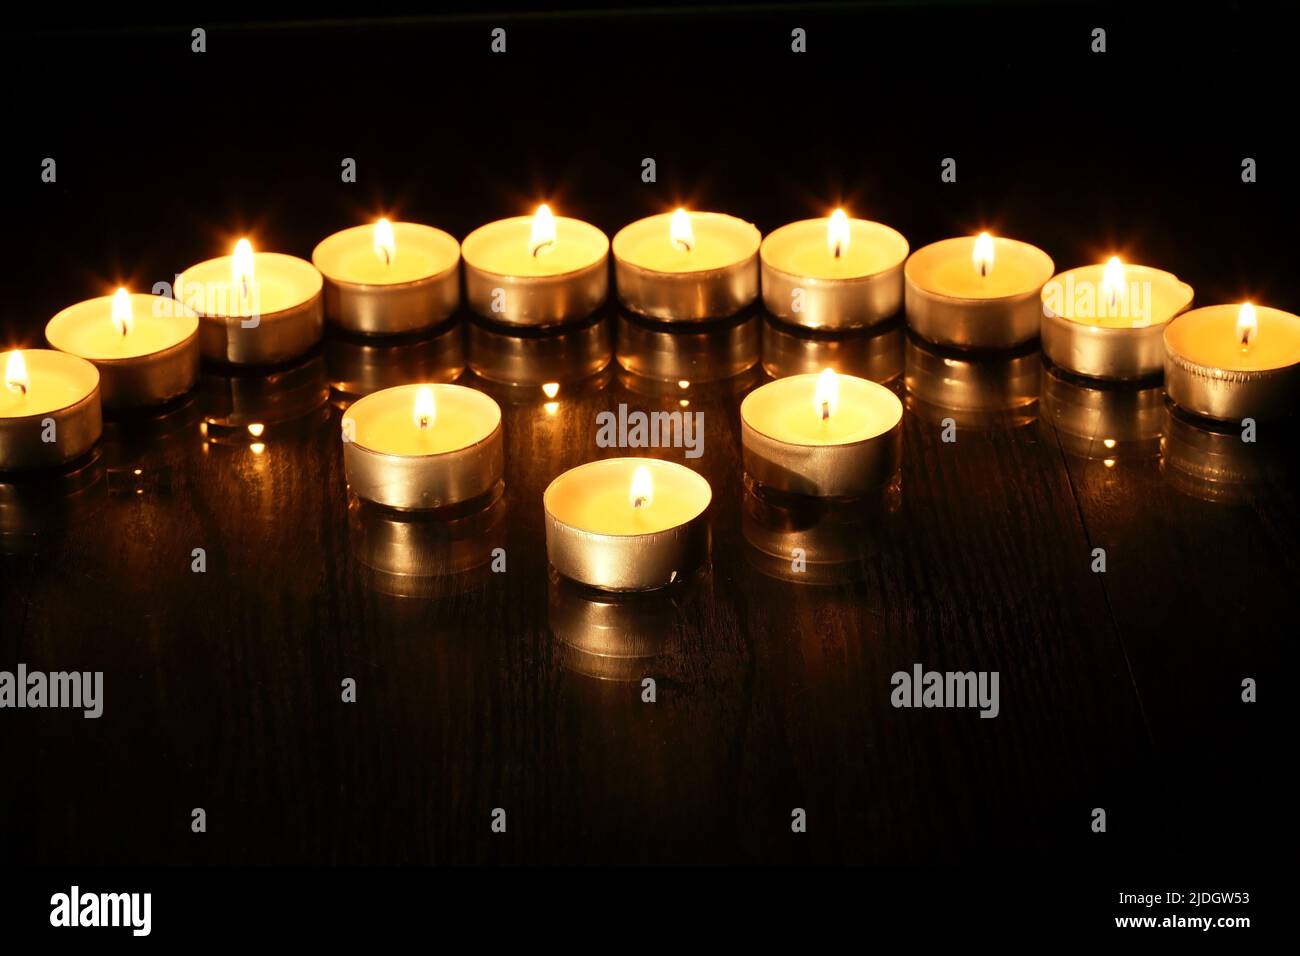 Juego de velas en espiral en una fila contra fondo oscuro Foto de stock